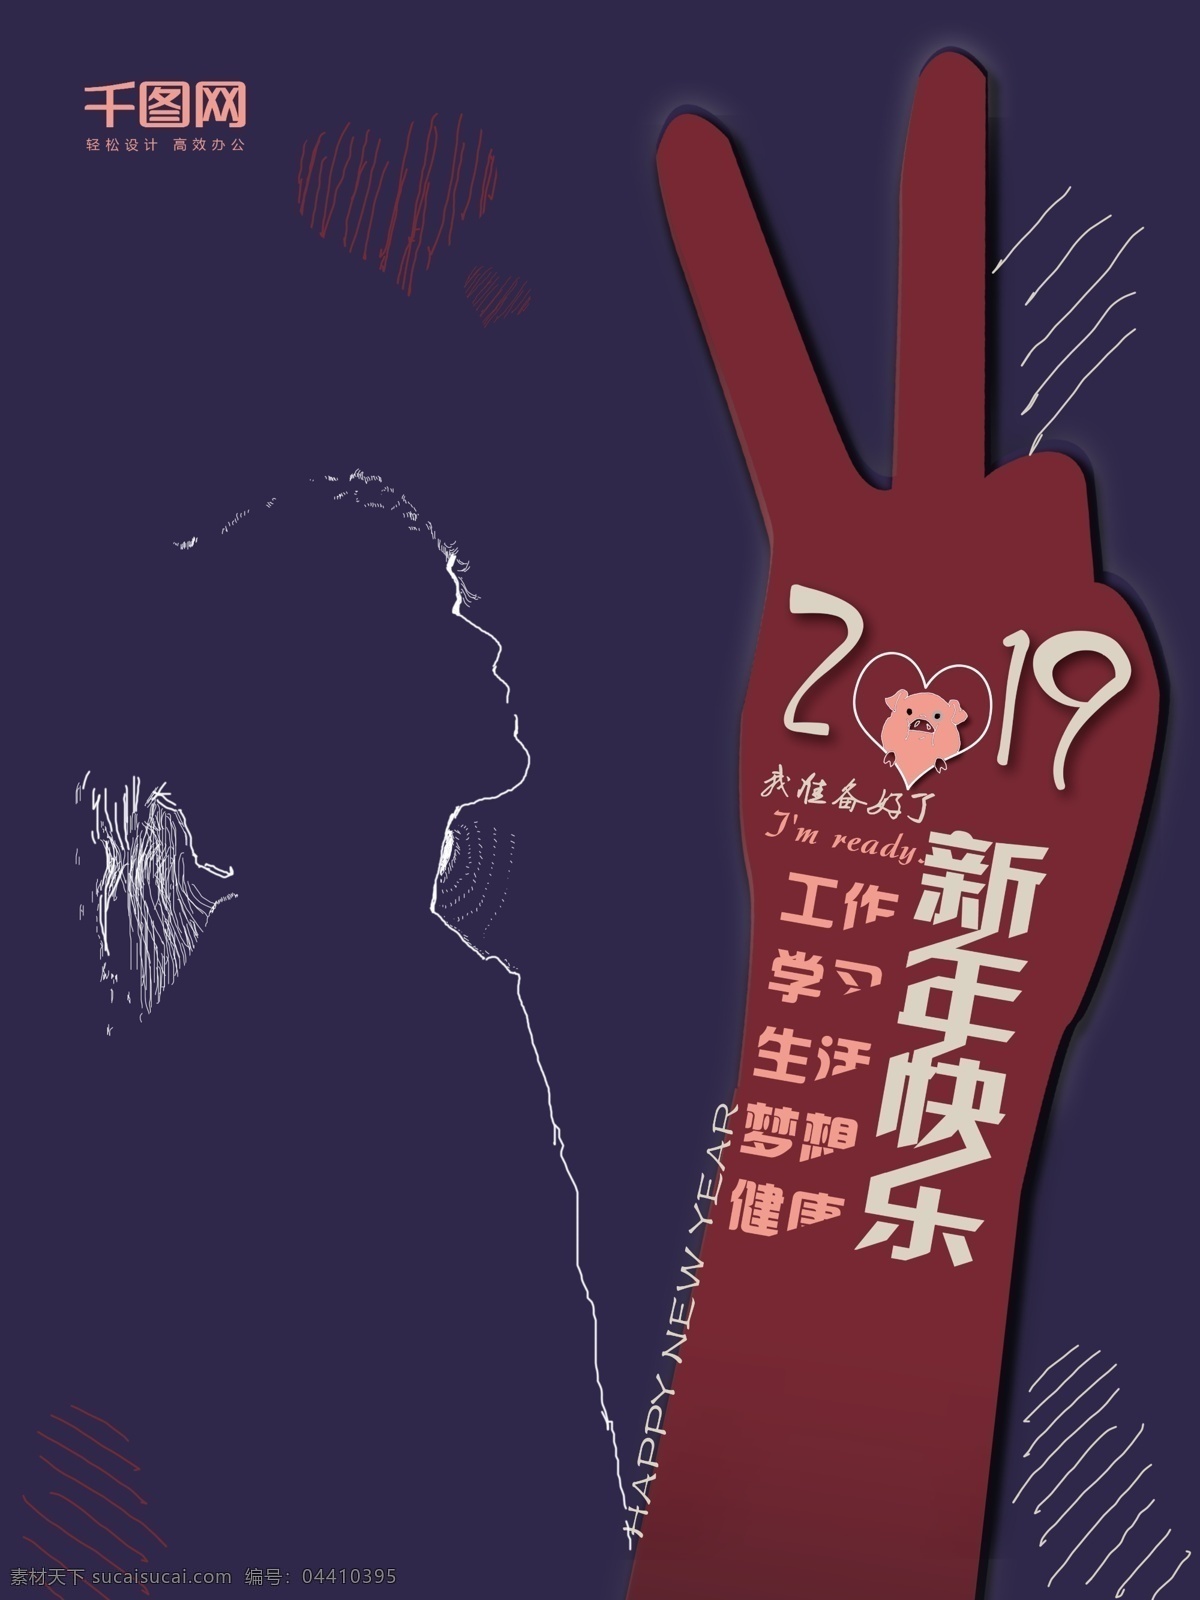 2019 准备 好 迎新 年 海报 新年快乐 学习 生活 梦想 健康 工作